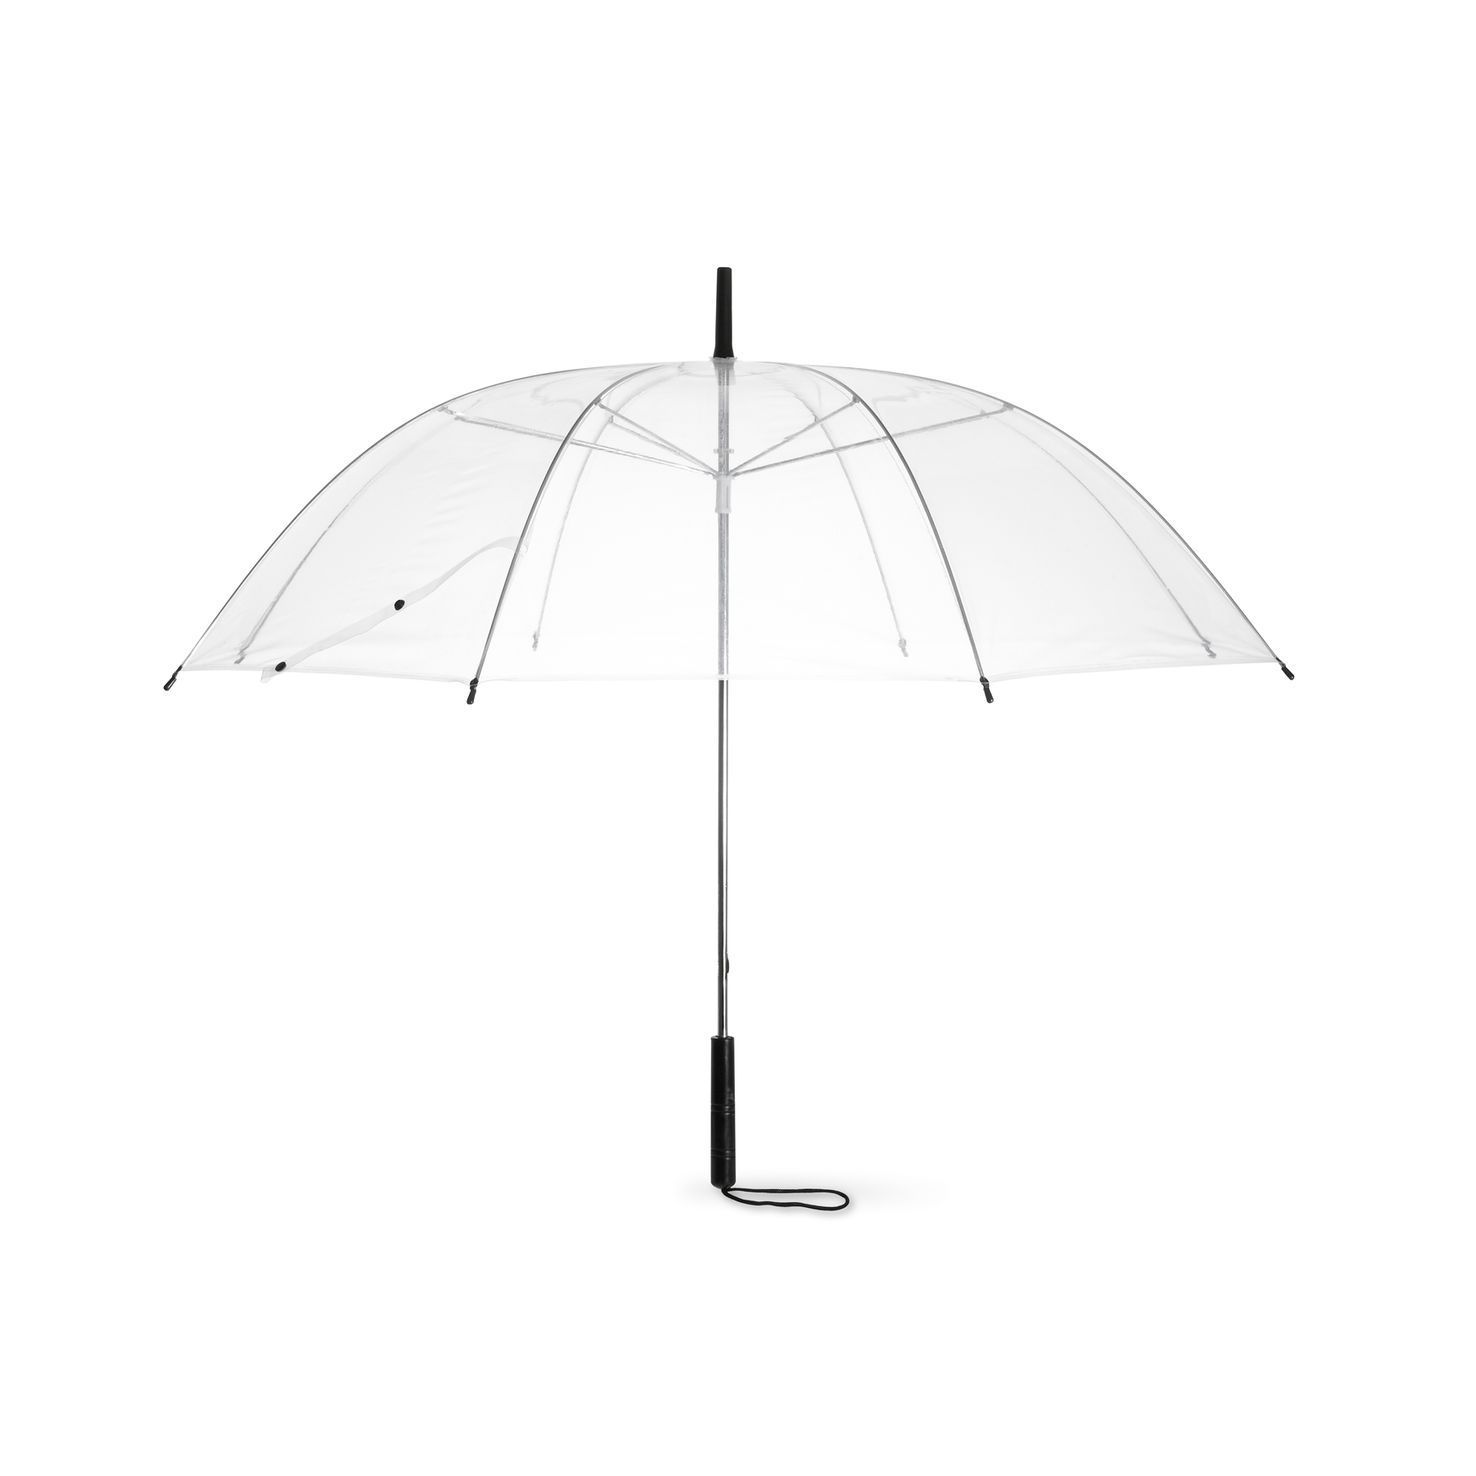 Doorzichtige paraplu | Onbedrukt cm